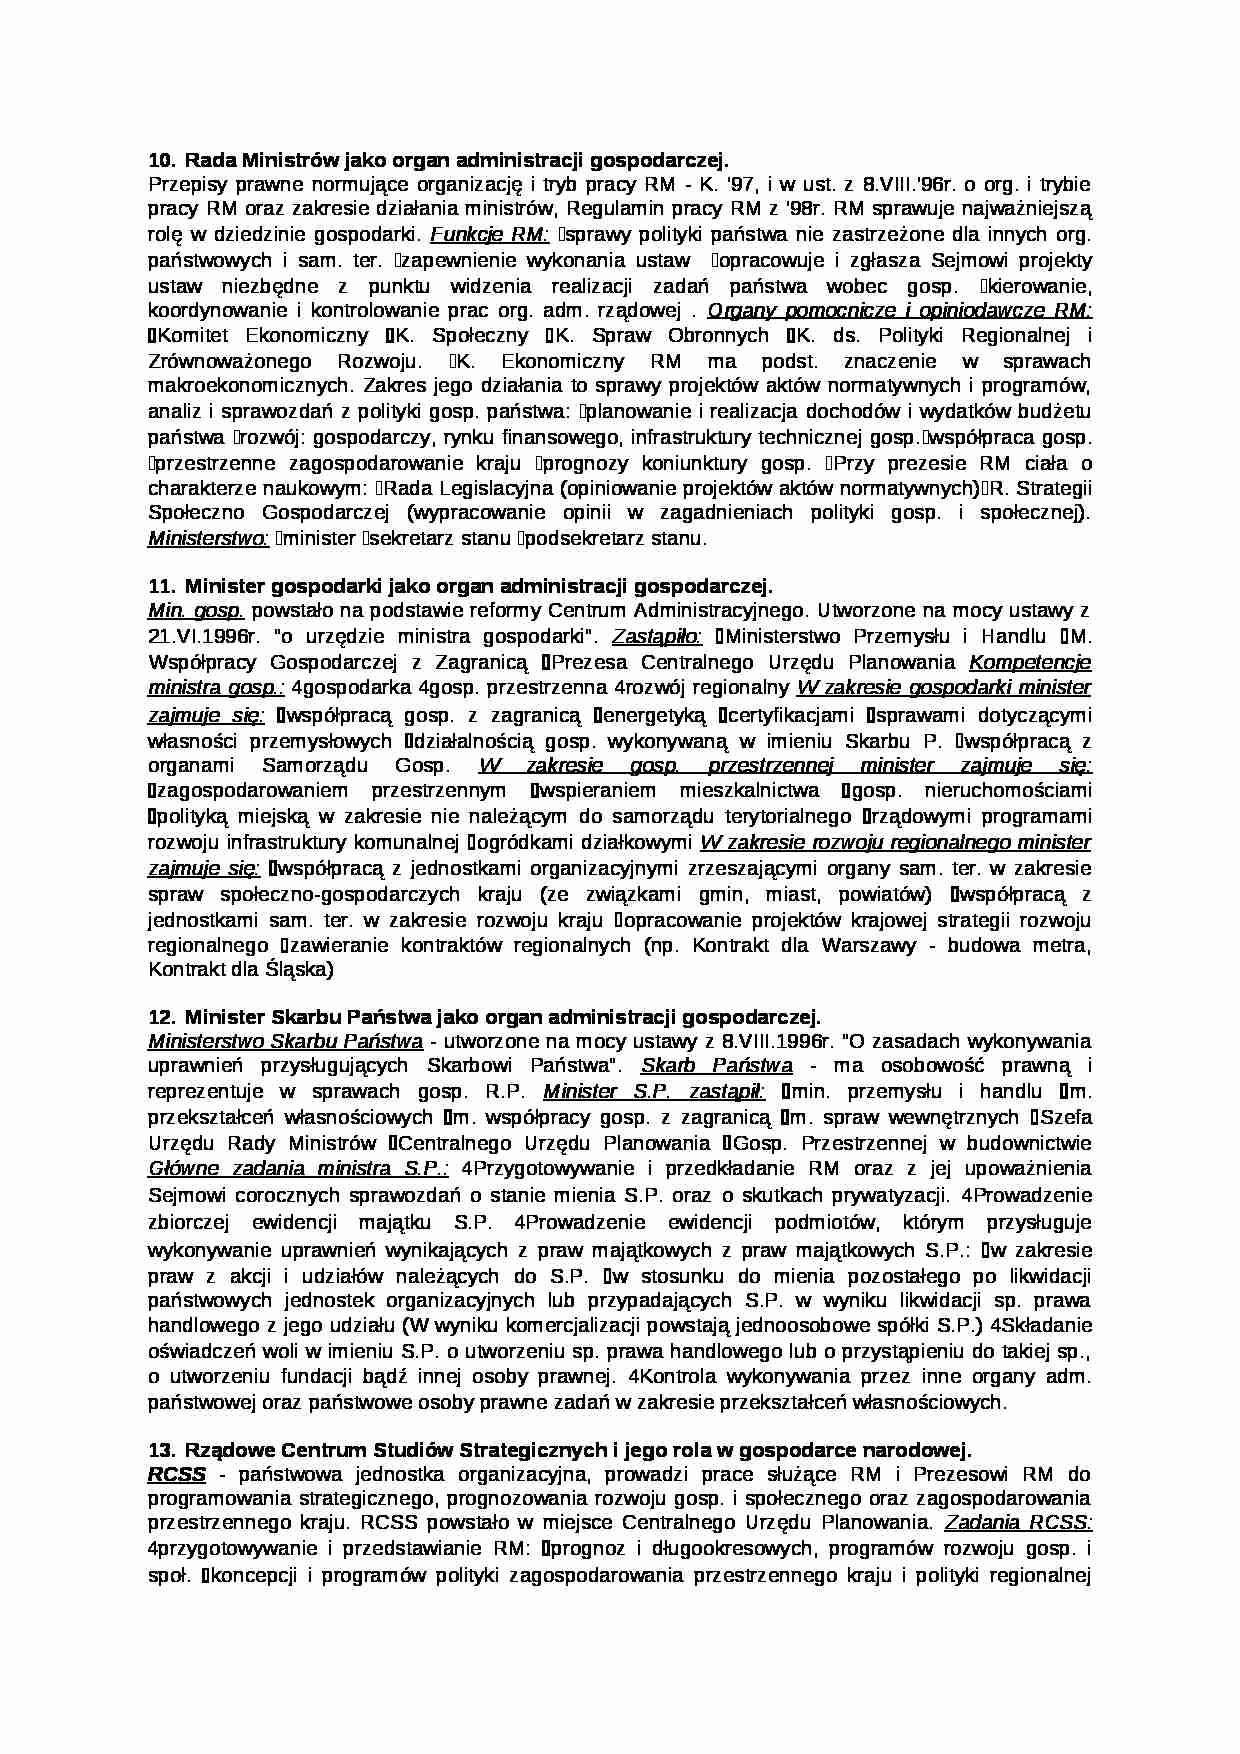 Rada Ministrów jako organ administracji gospodarczej - strona 1